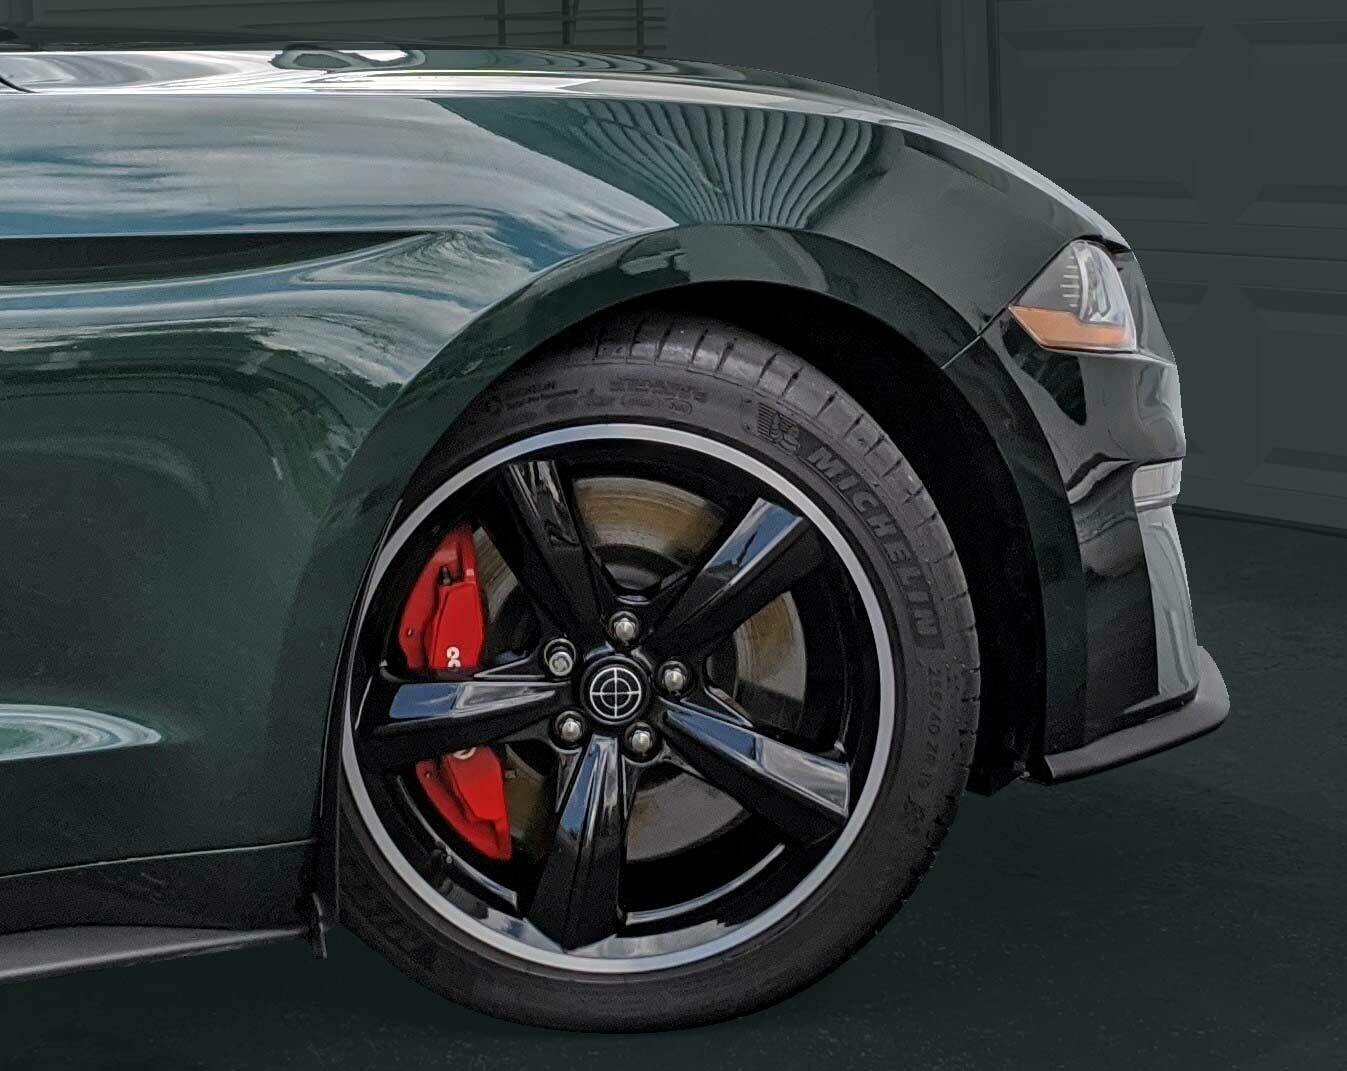 2019 to 2020 BULLITT Mustang: Crosshairs Wheel Caps